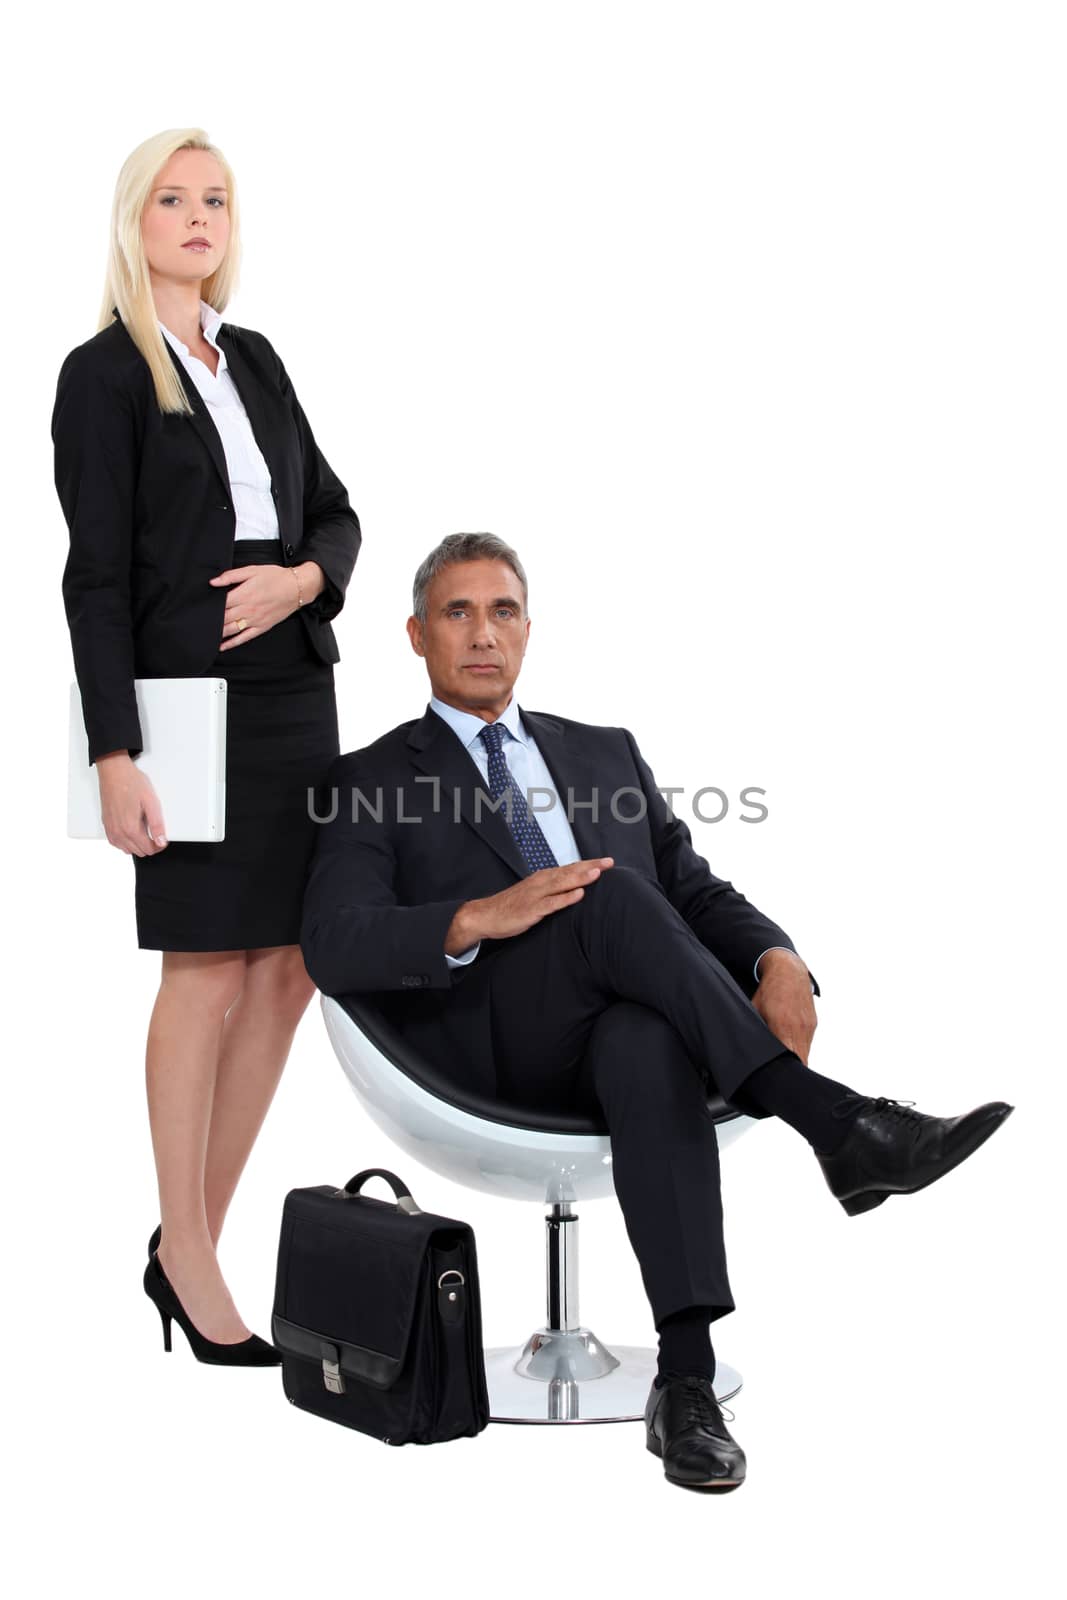 man and woman executives